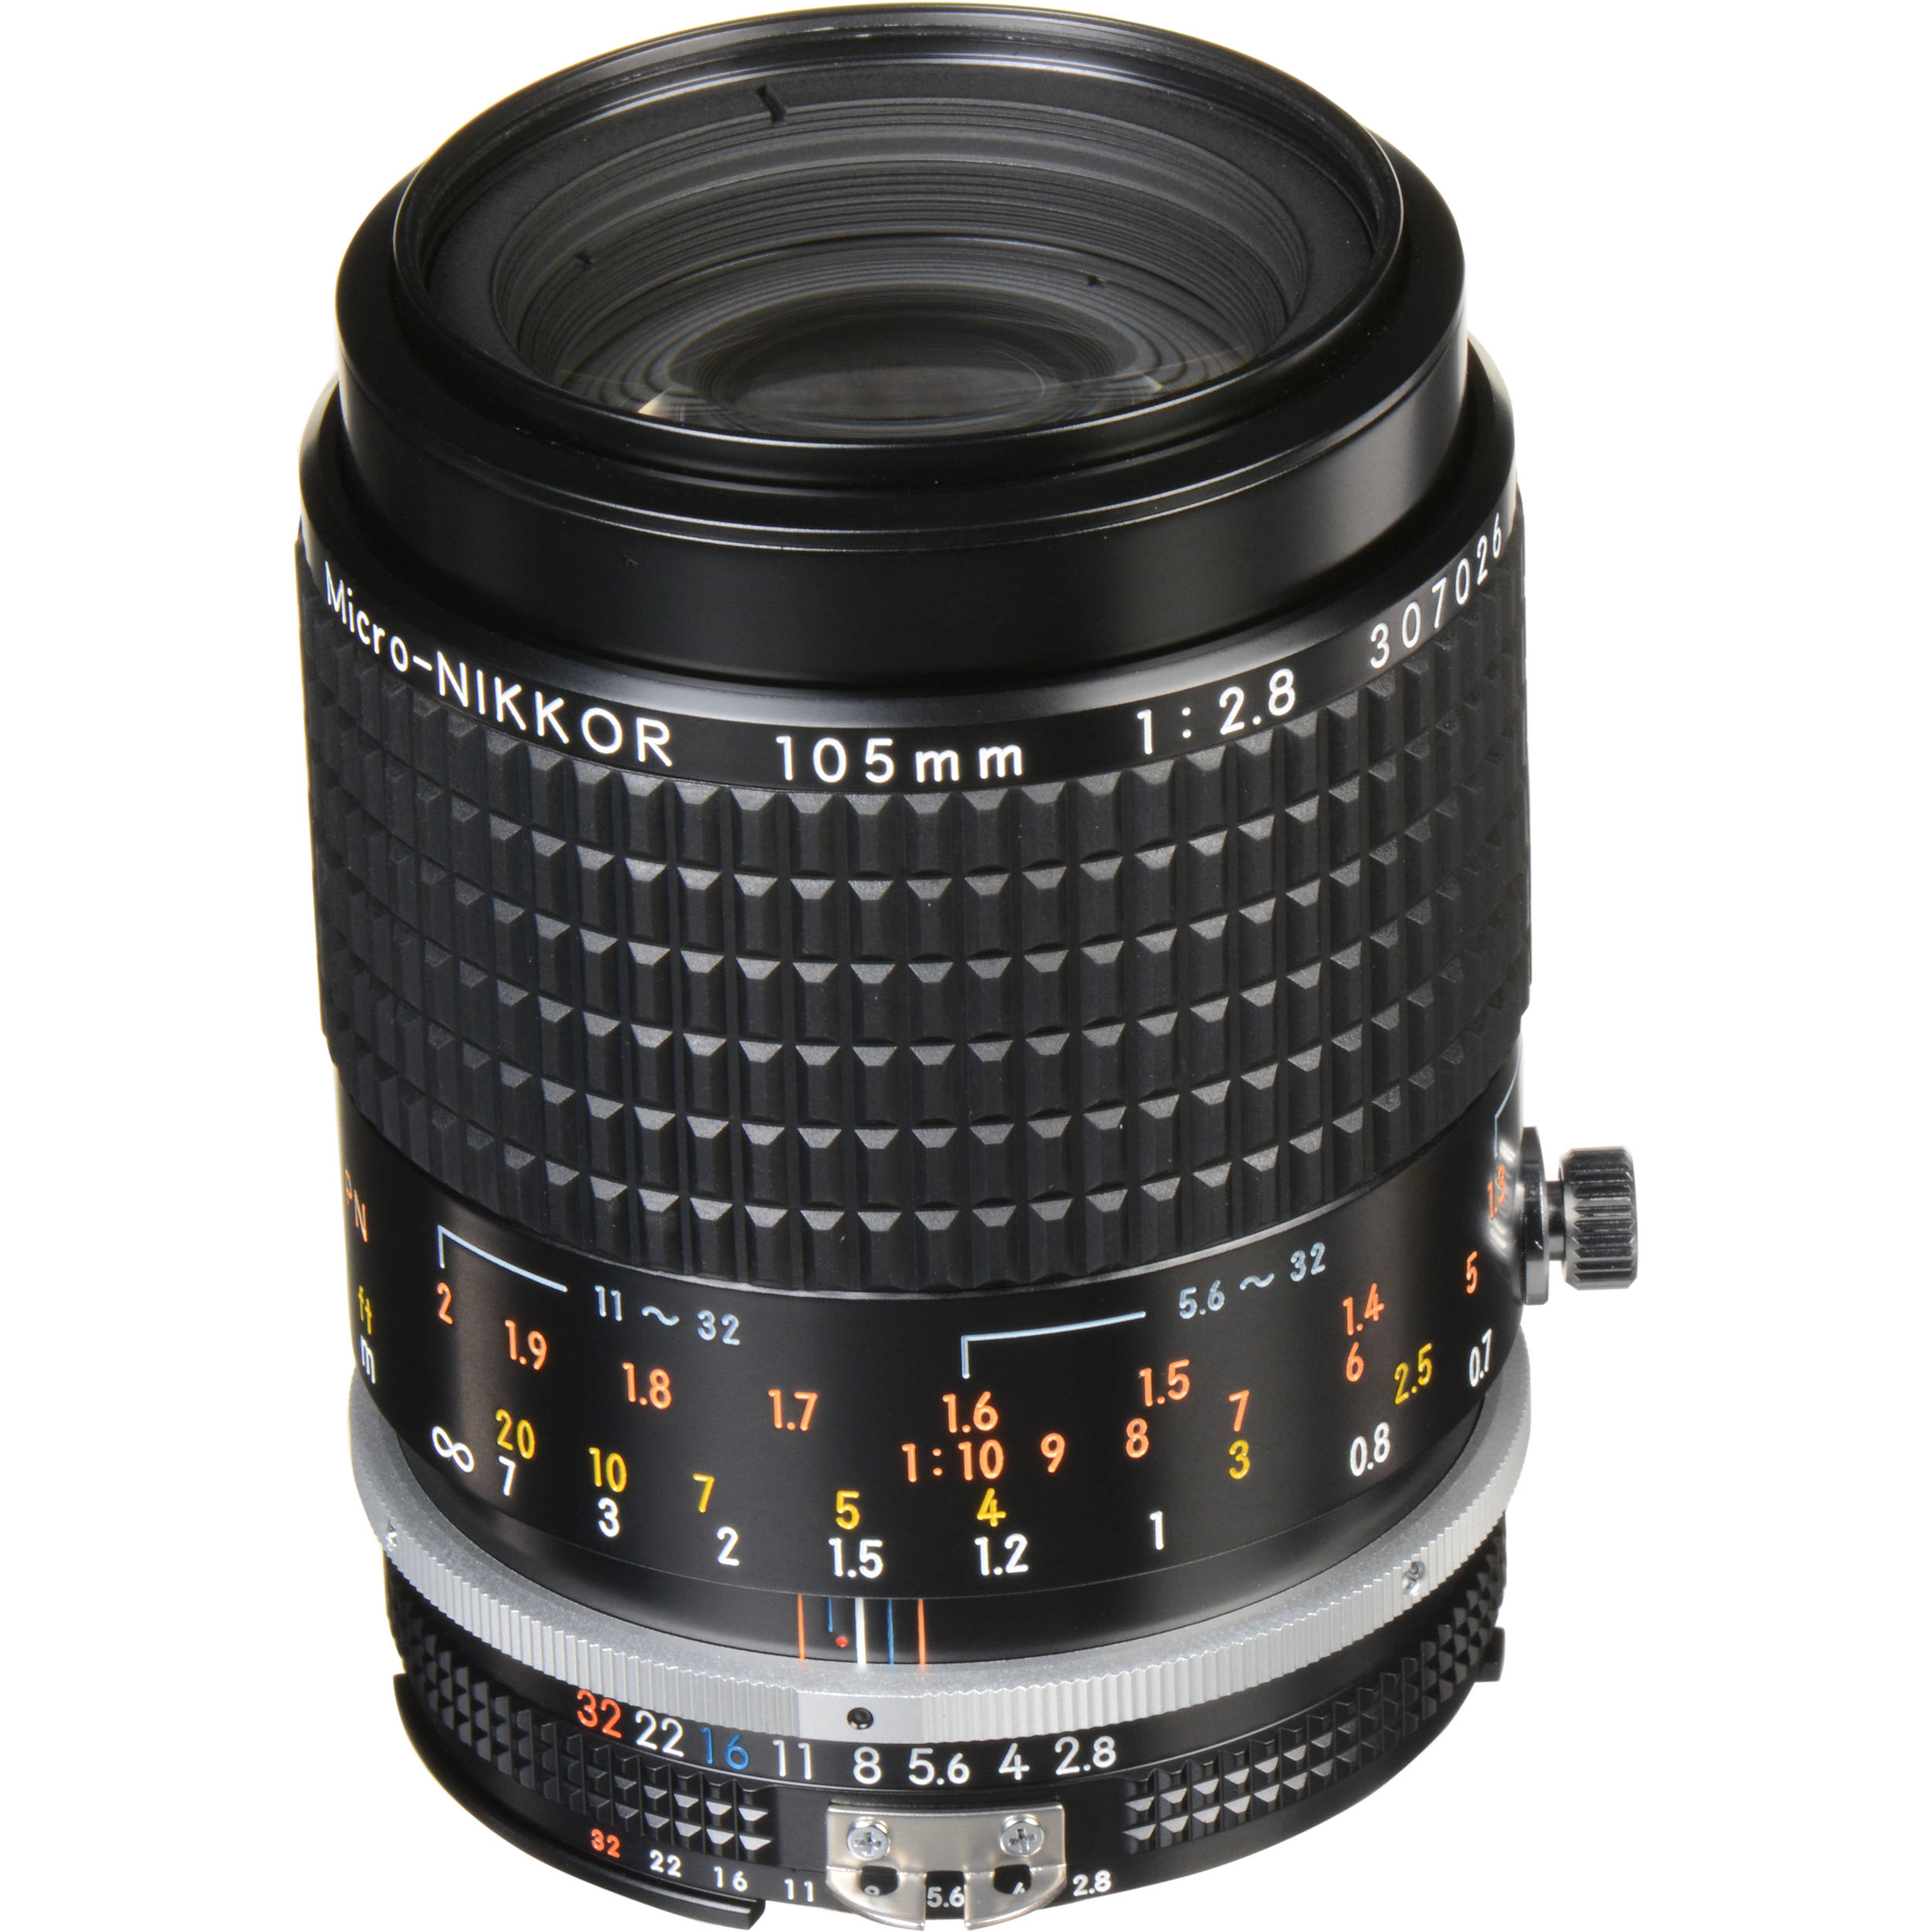 Nikon Macro Lens 105mm Deals, 50% OFF | www.vetyvet.com